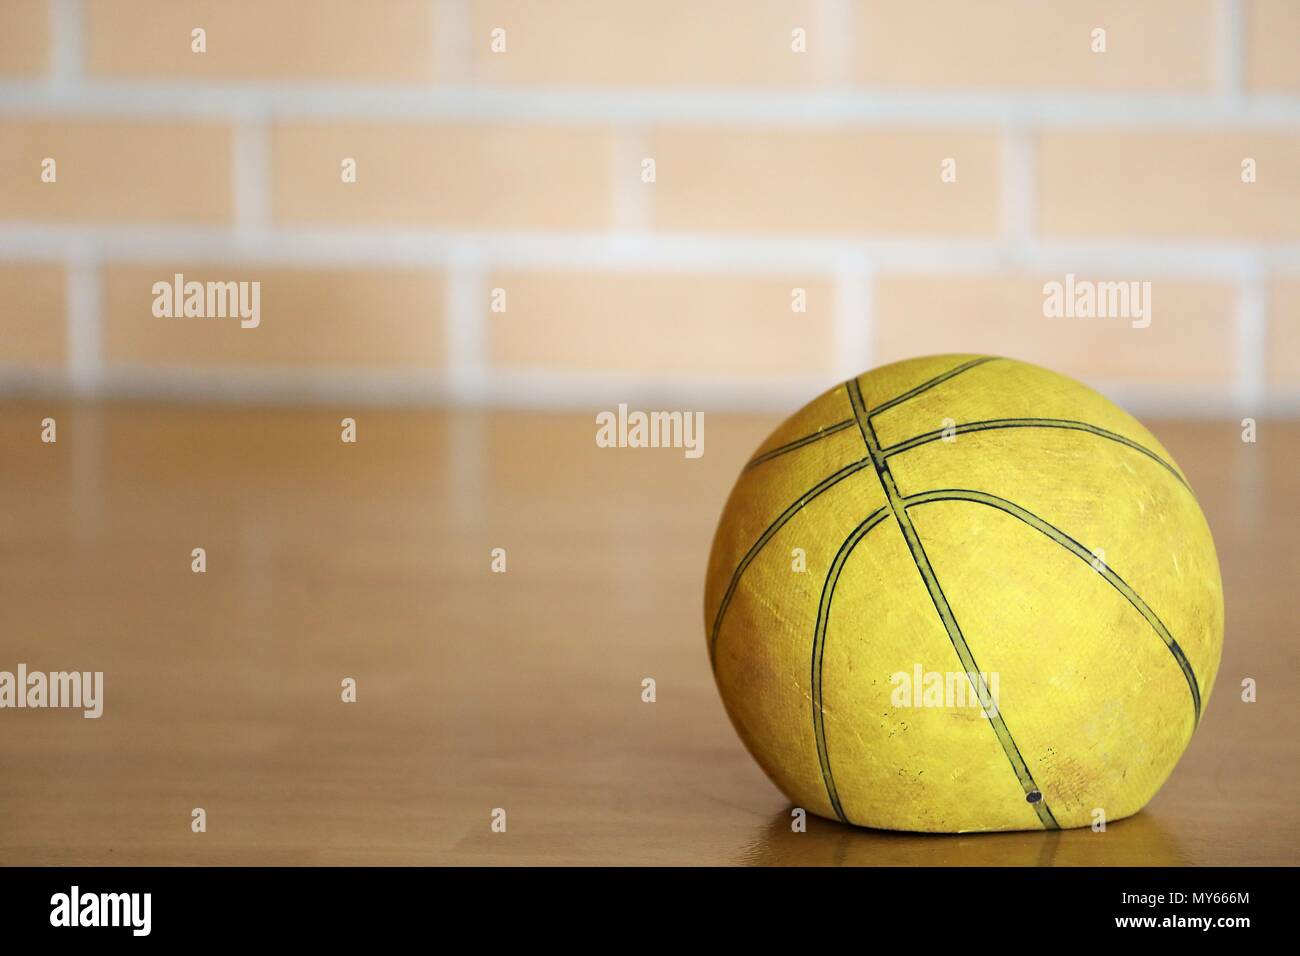 Nahaufnahme alten müde, deflationiert abgenutzt verbrachte Basketball auf einem hölzernen Hofes mit unscharfen brick Hintergrund lassen. Verwendet, Sportausrüstung, gebrochen, flach, Stockfoto